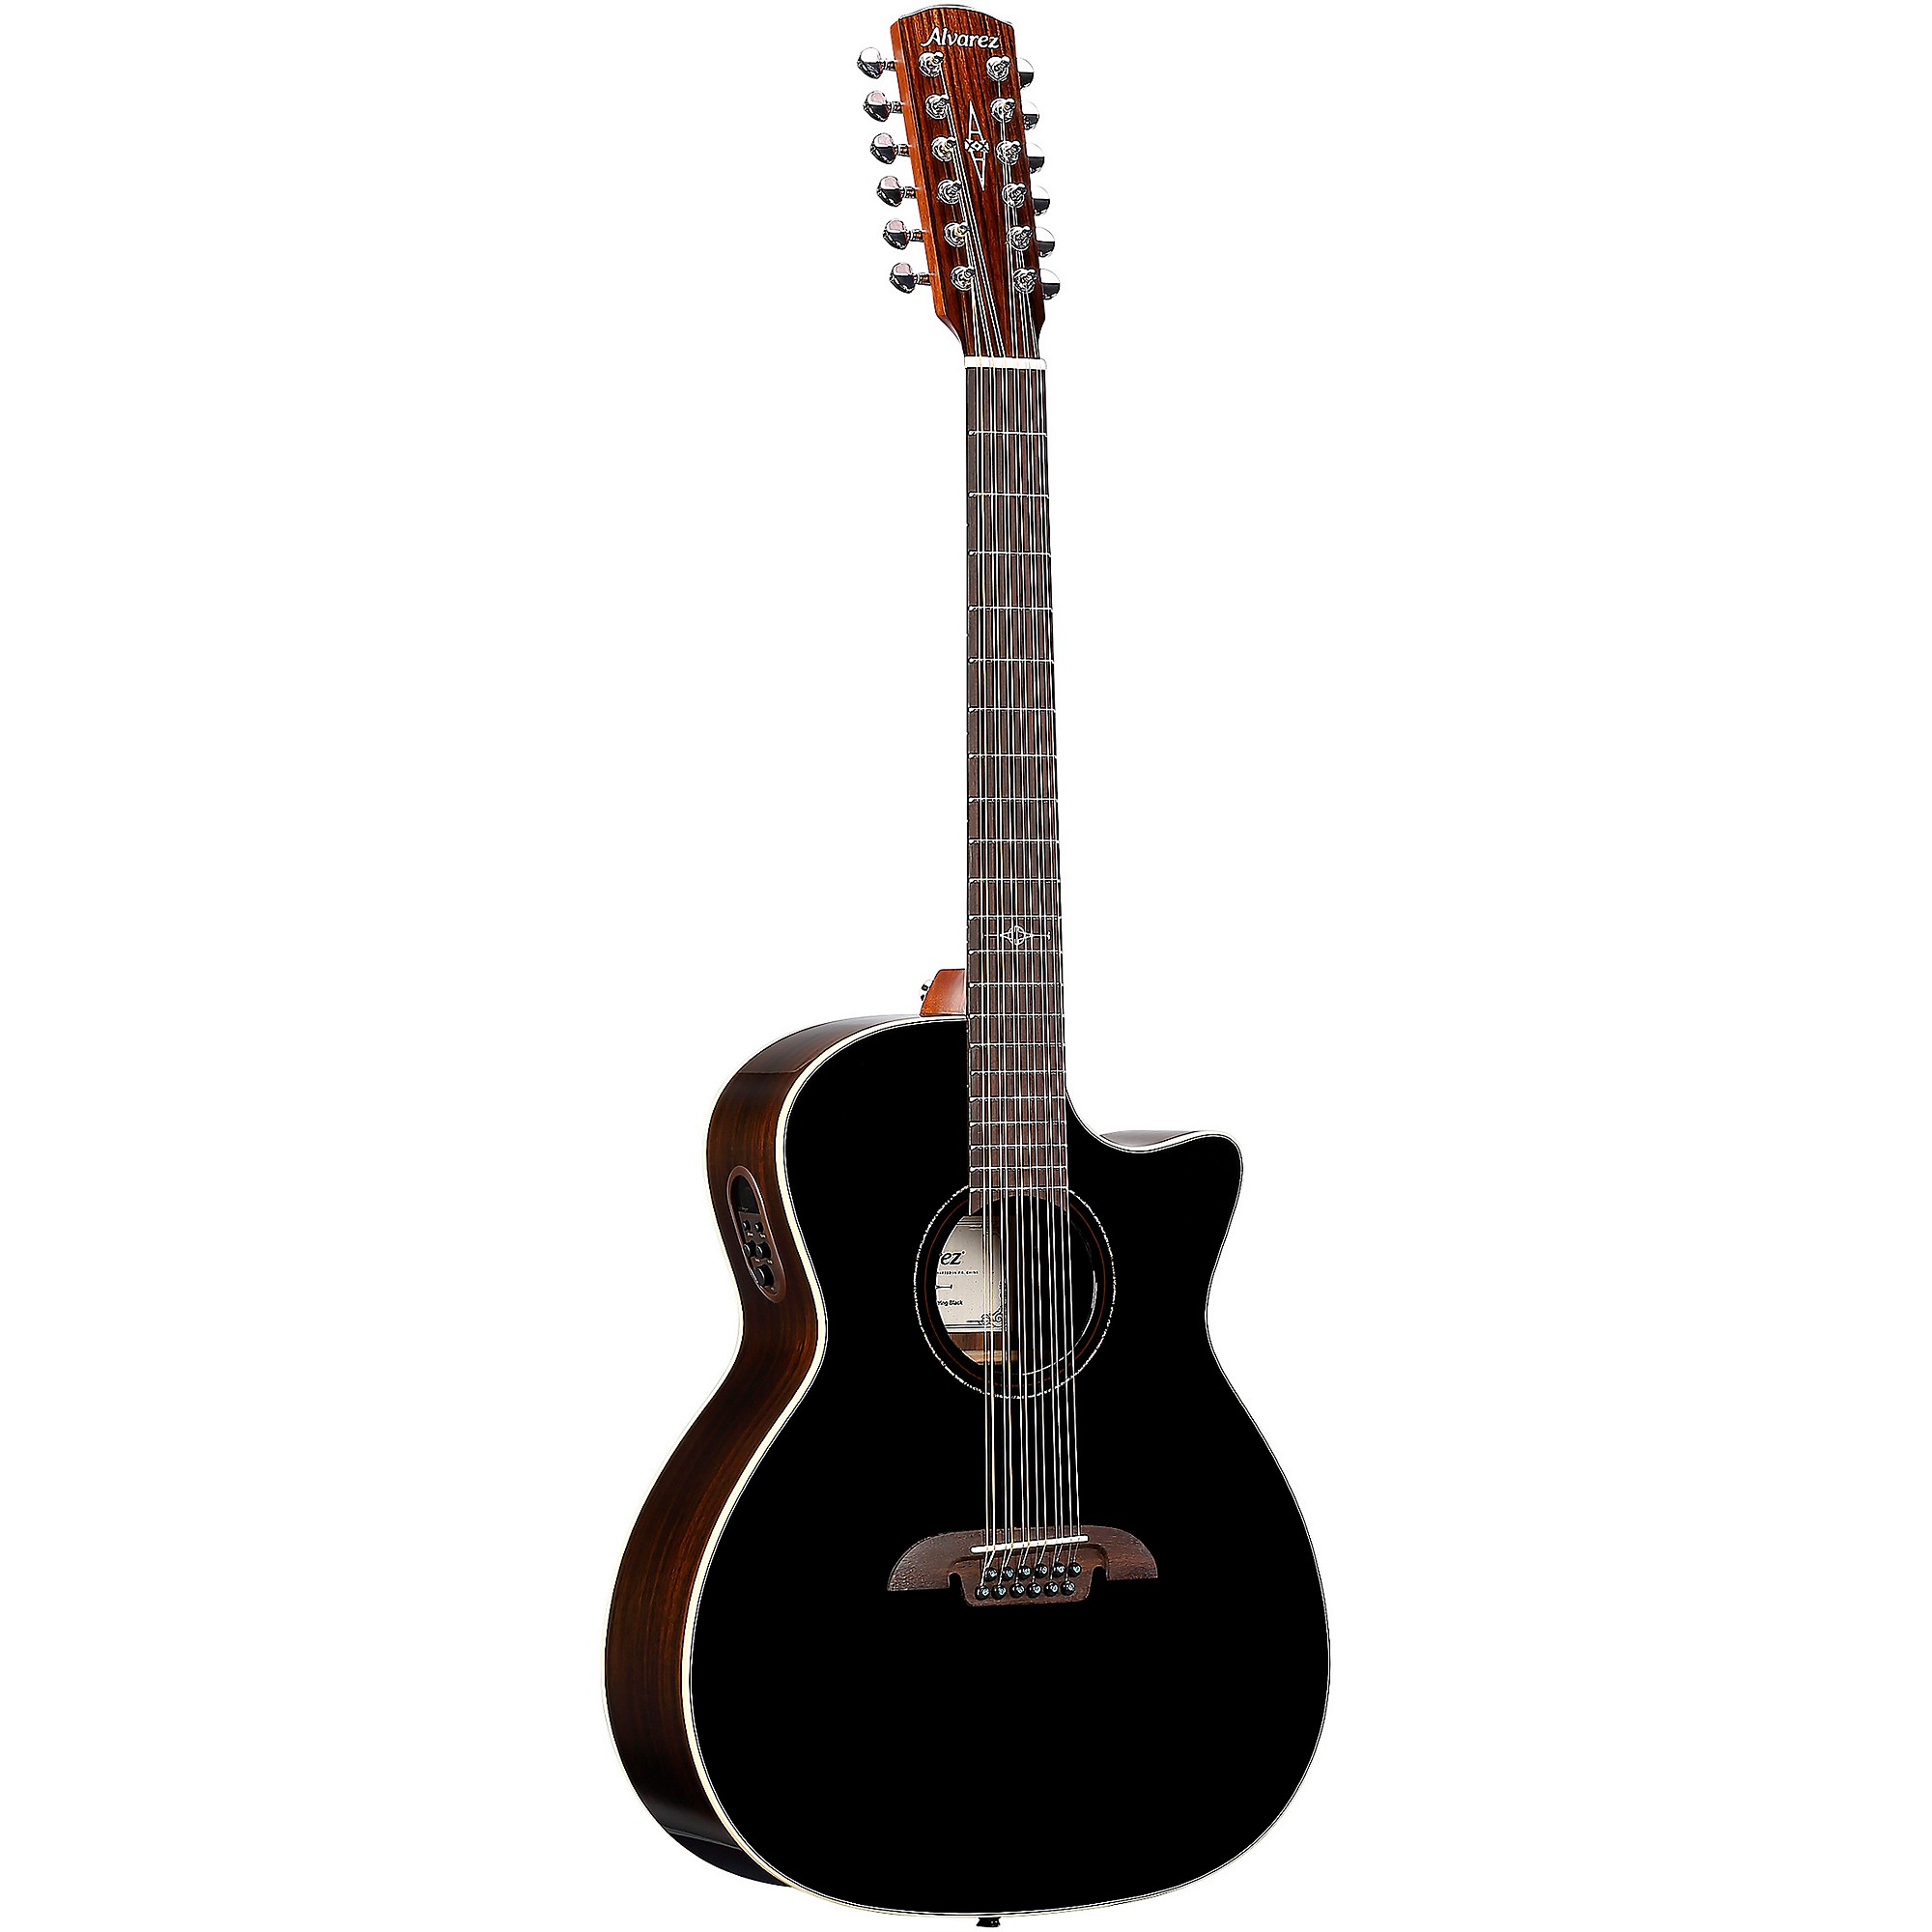 Alvarez AG70CE 12-струнная акусто-электрическая гитара Grand Auditorium, черная